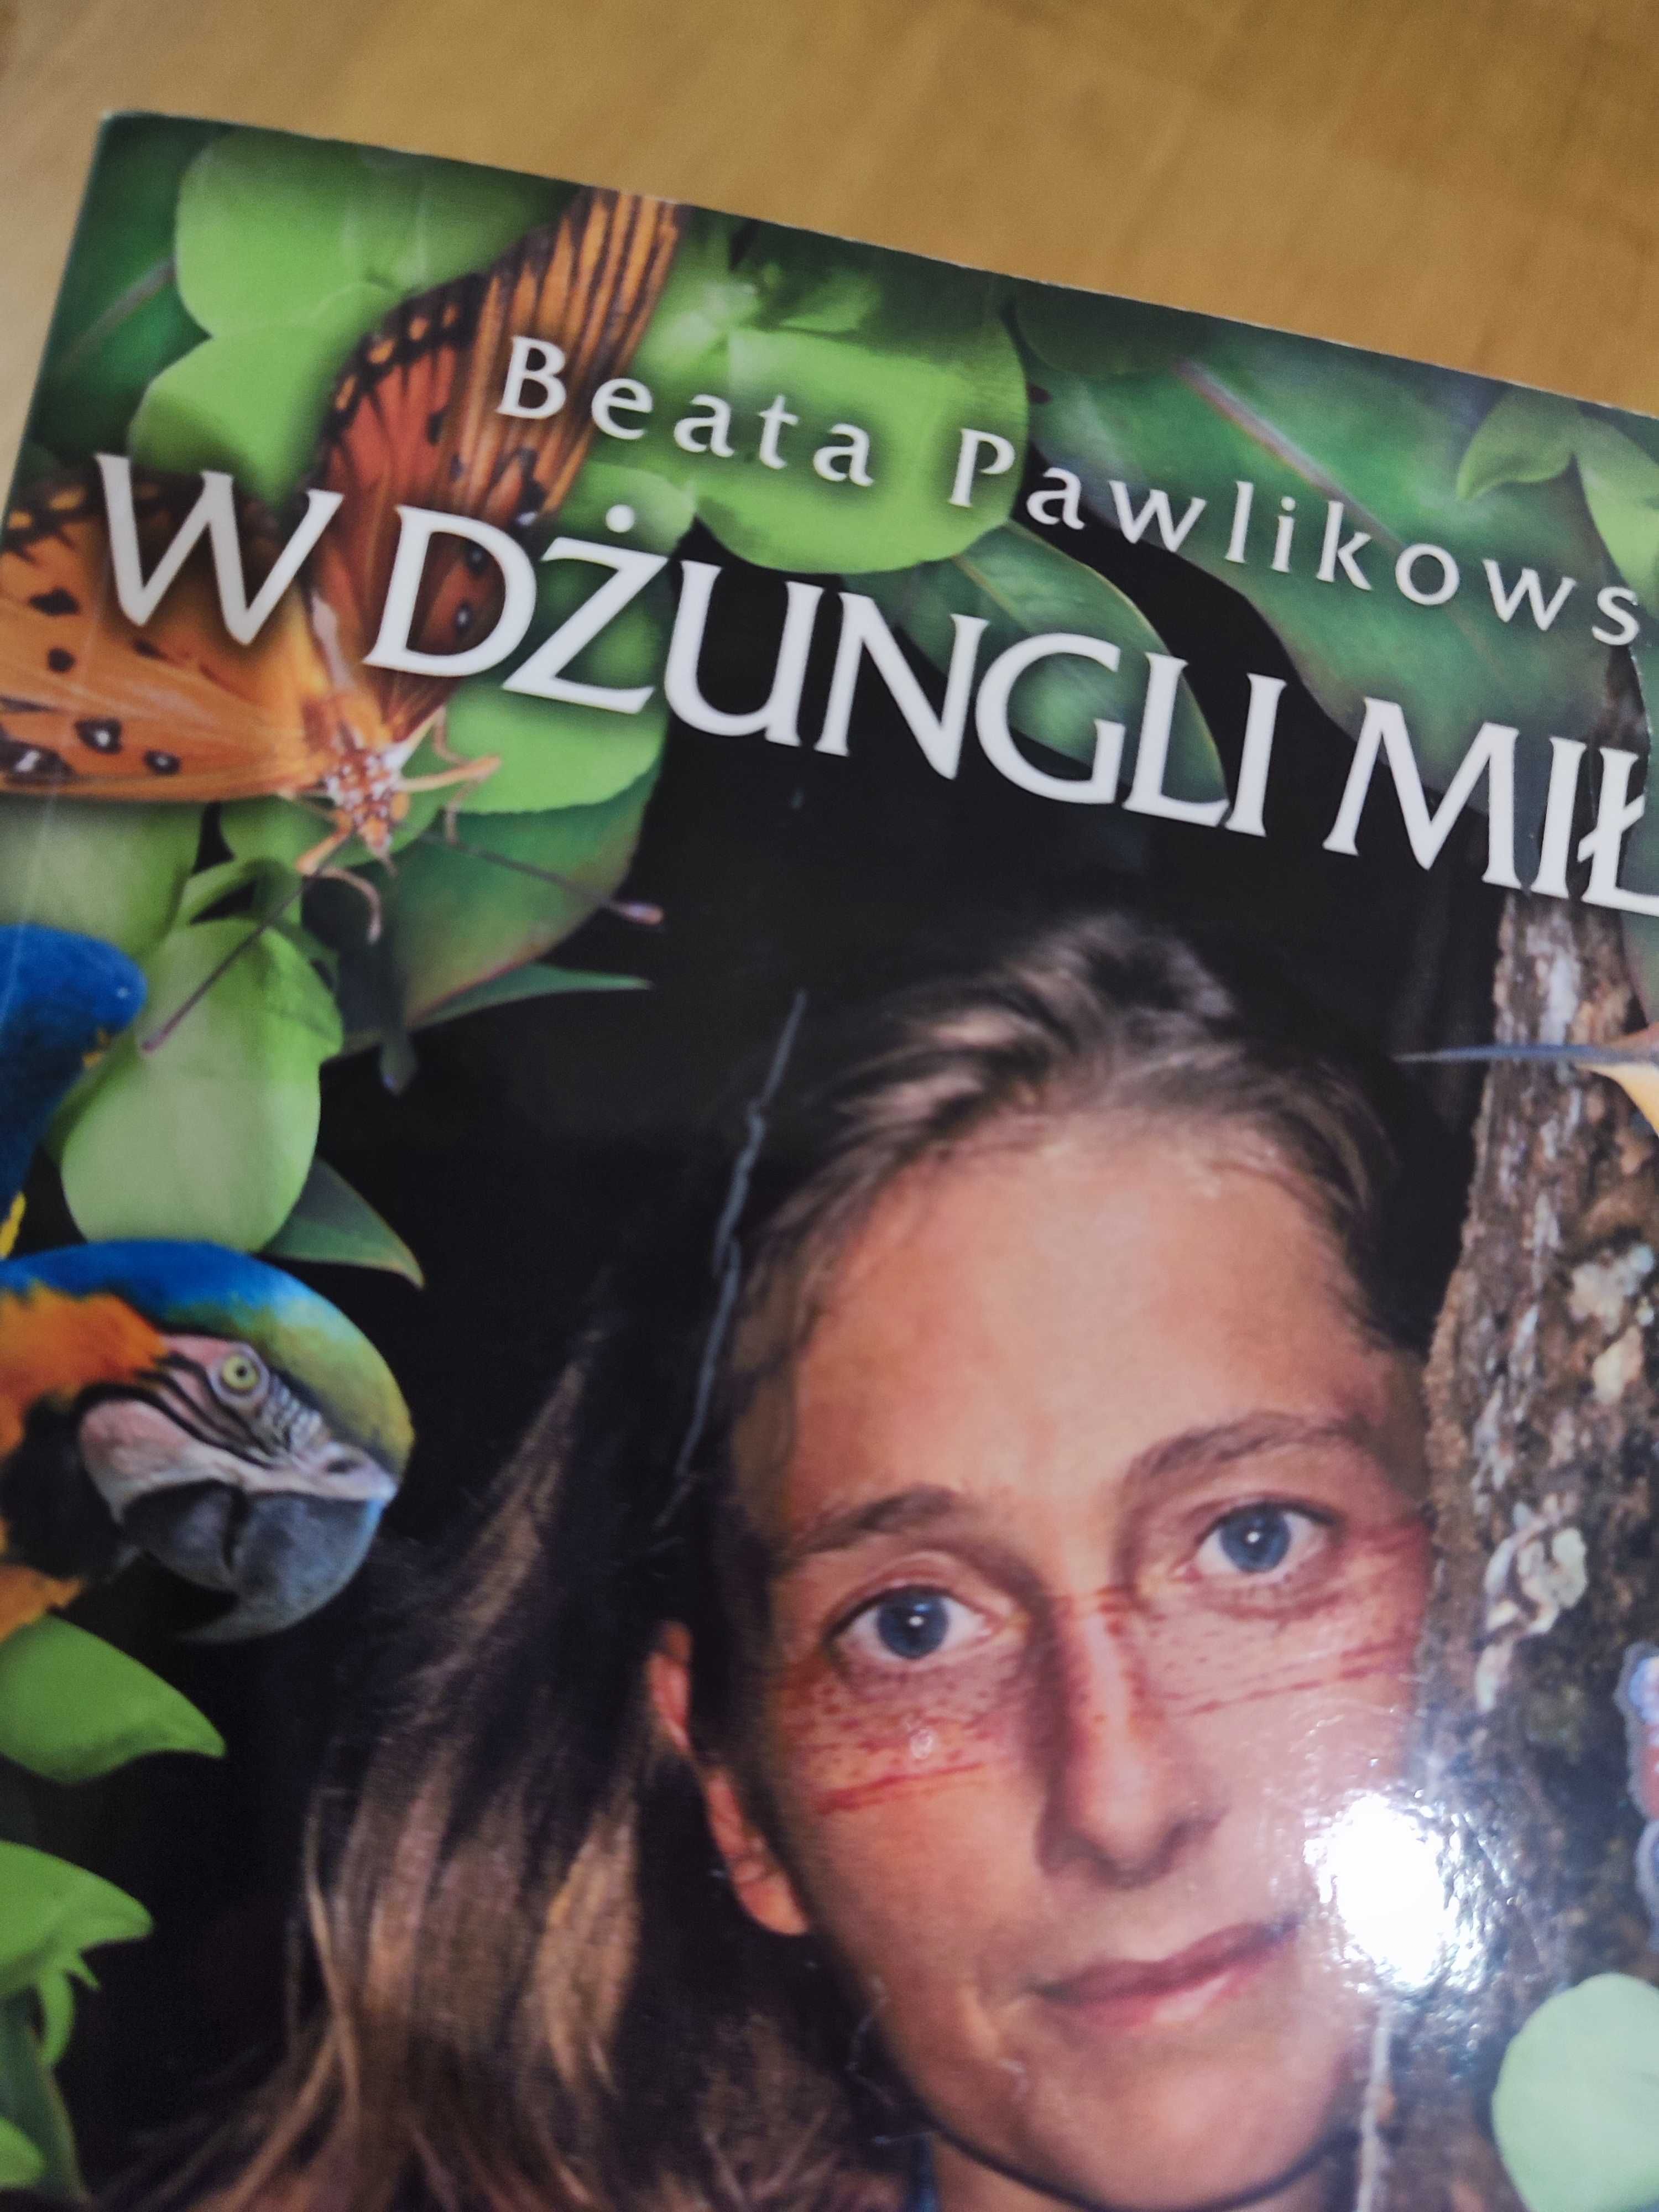 W dżungli miłości Beata Pawlikowska